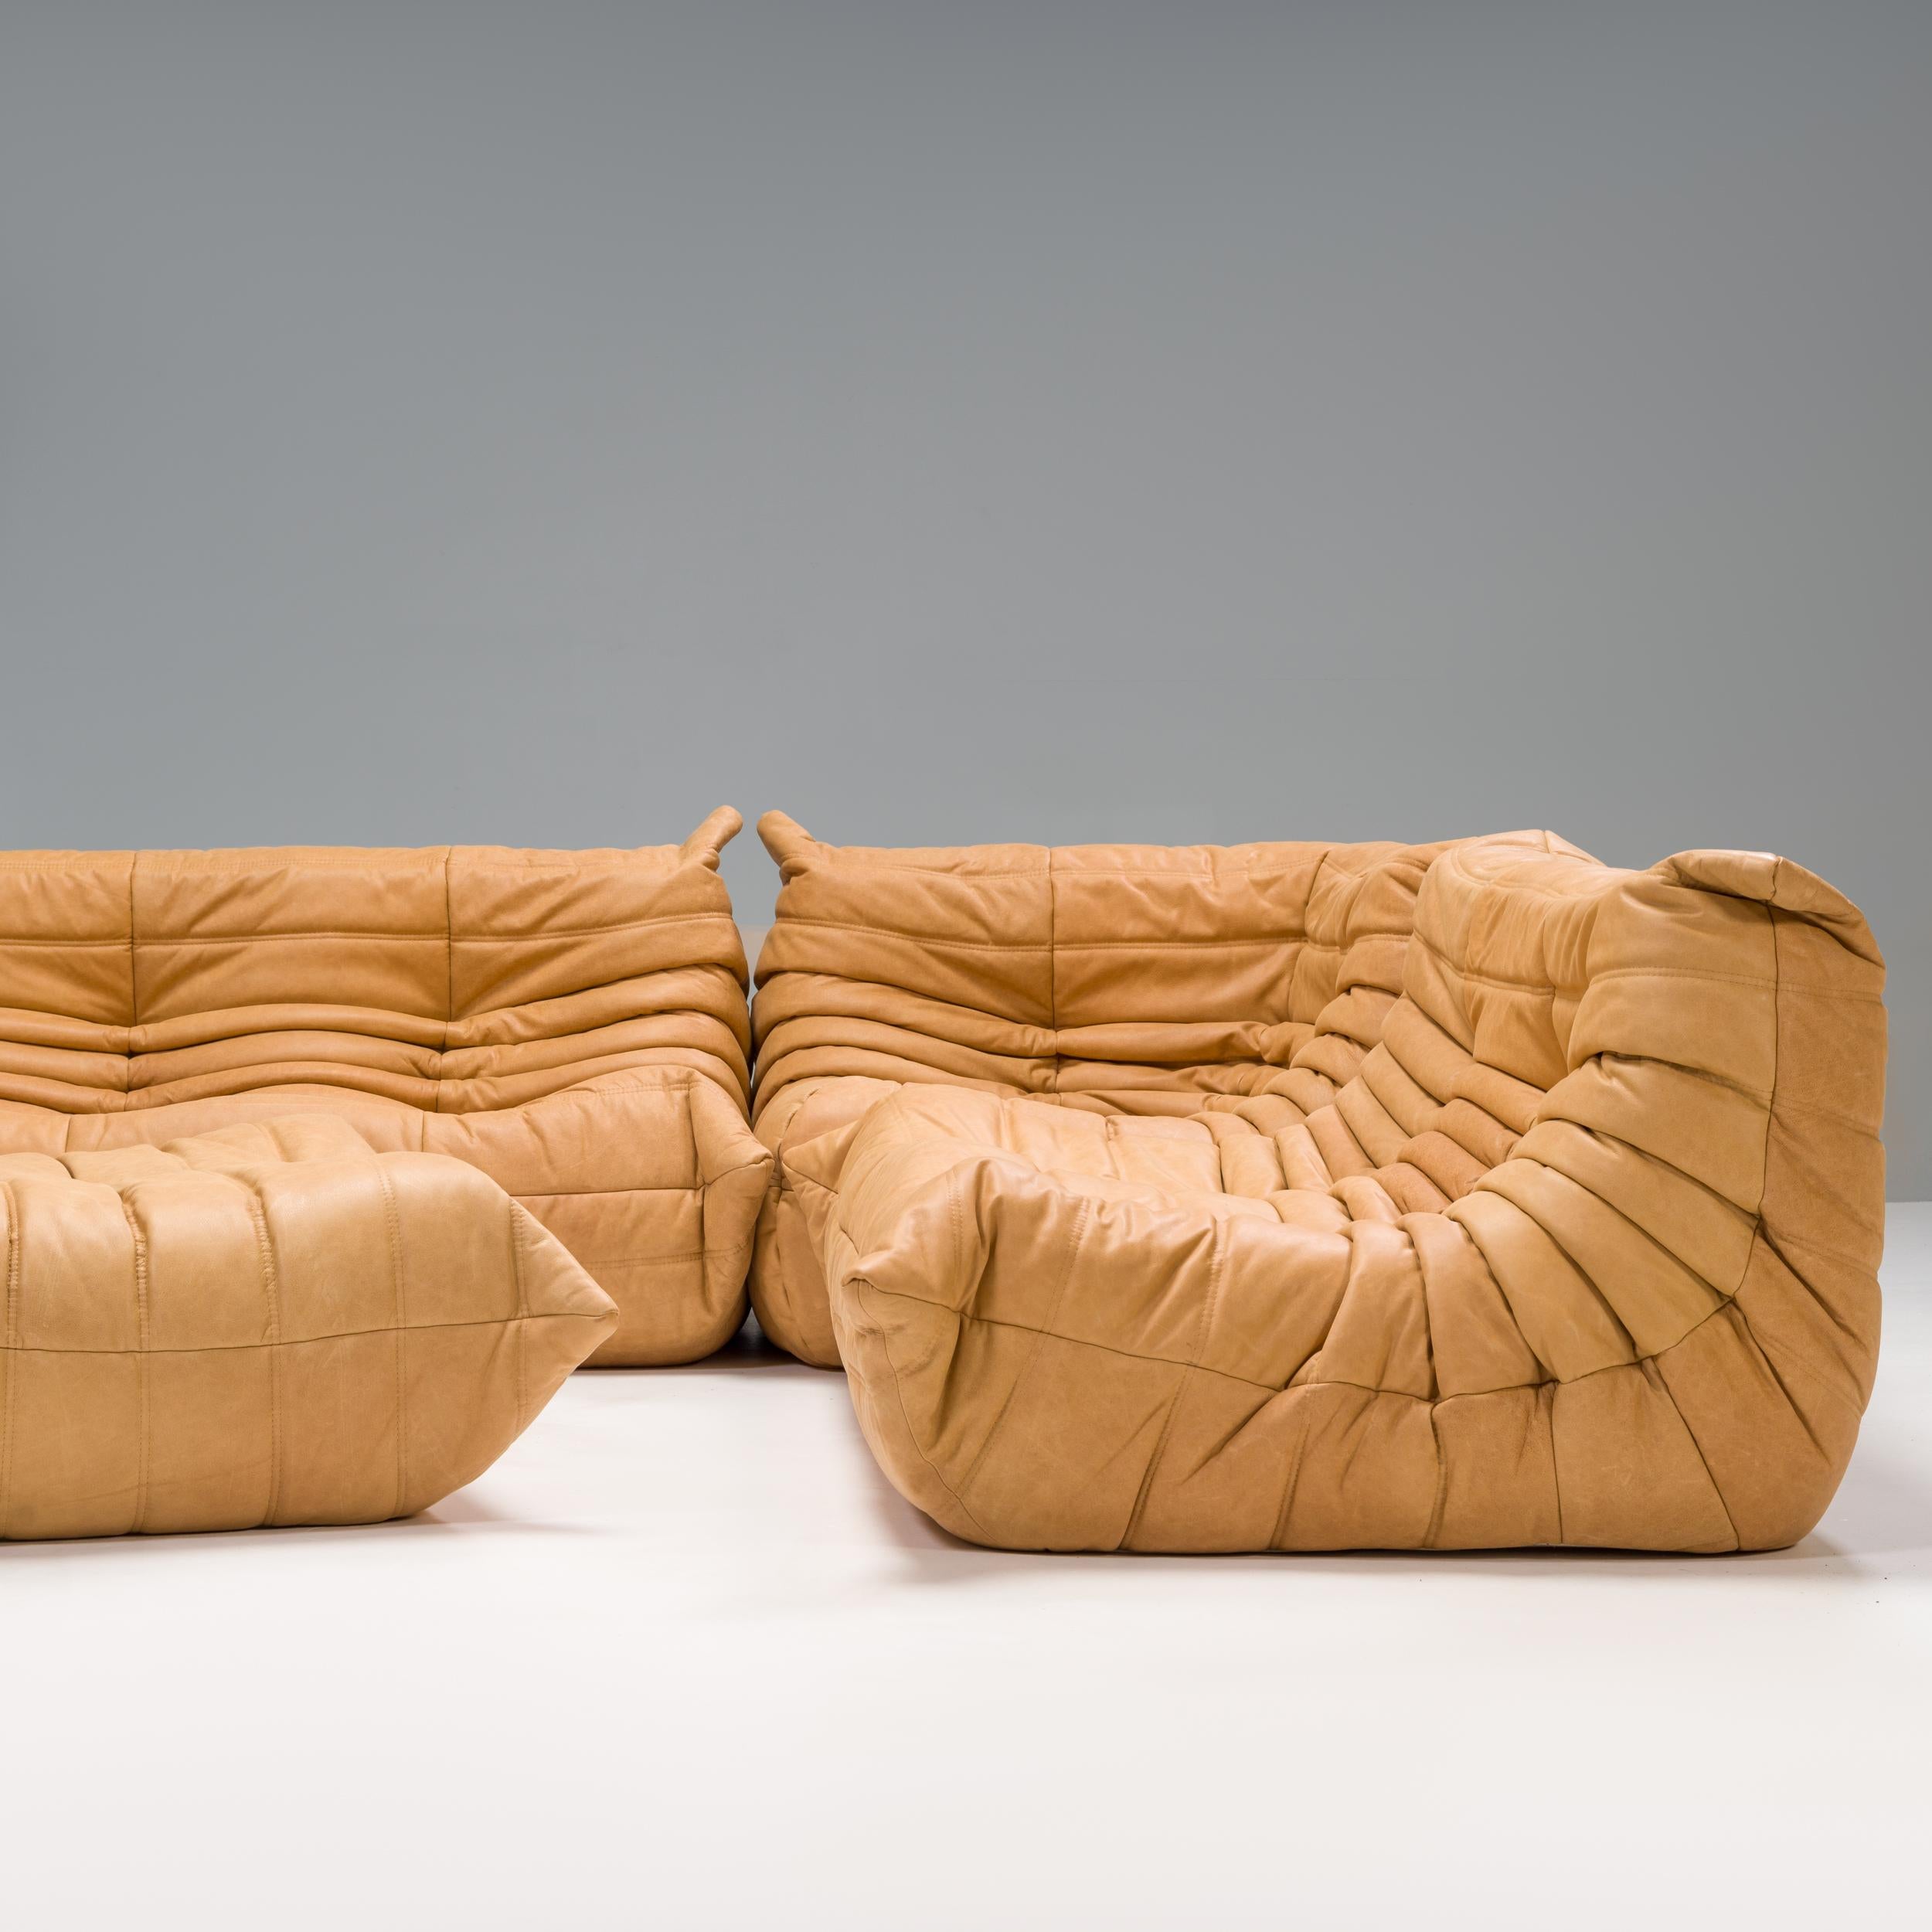 L'ensemble canapé et fauteuil en cuir Togo, conçu à l'origine par Michel Ducaroy pour Ligne Roset en 1973, est devenu un classique du design du milieu du siècle.

Les canapés ont été nouvellement rembourrés dans un tissu souple et doux en cuir